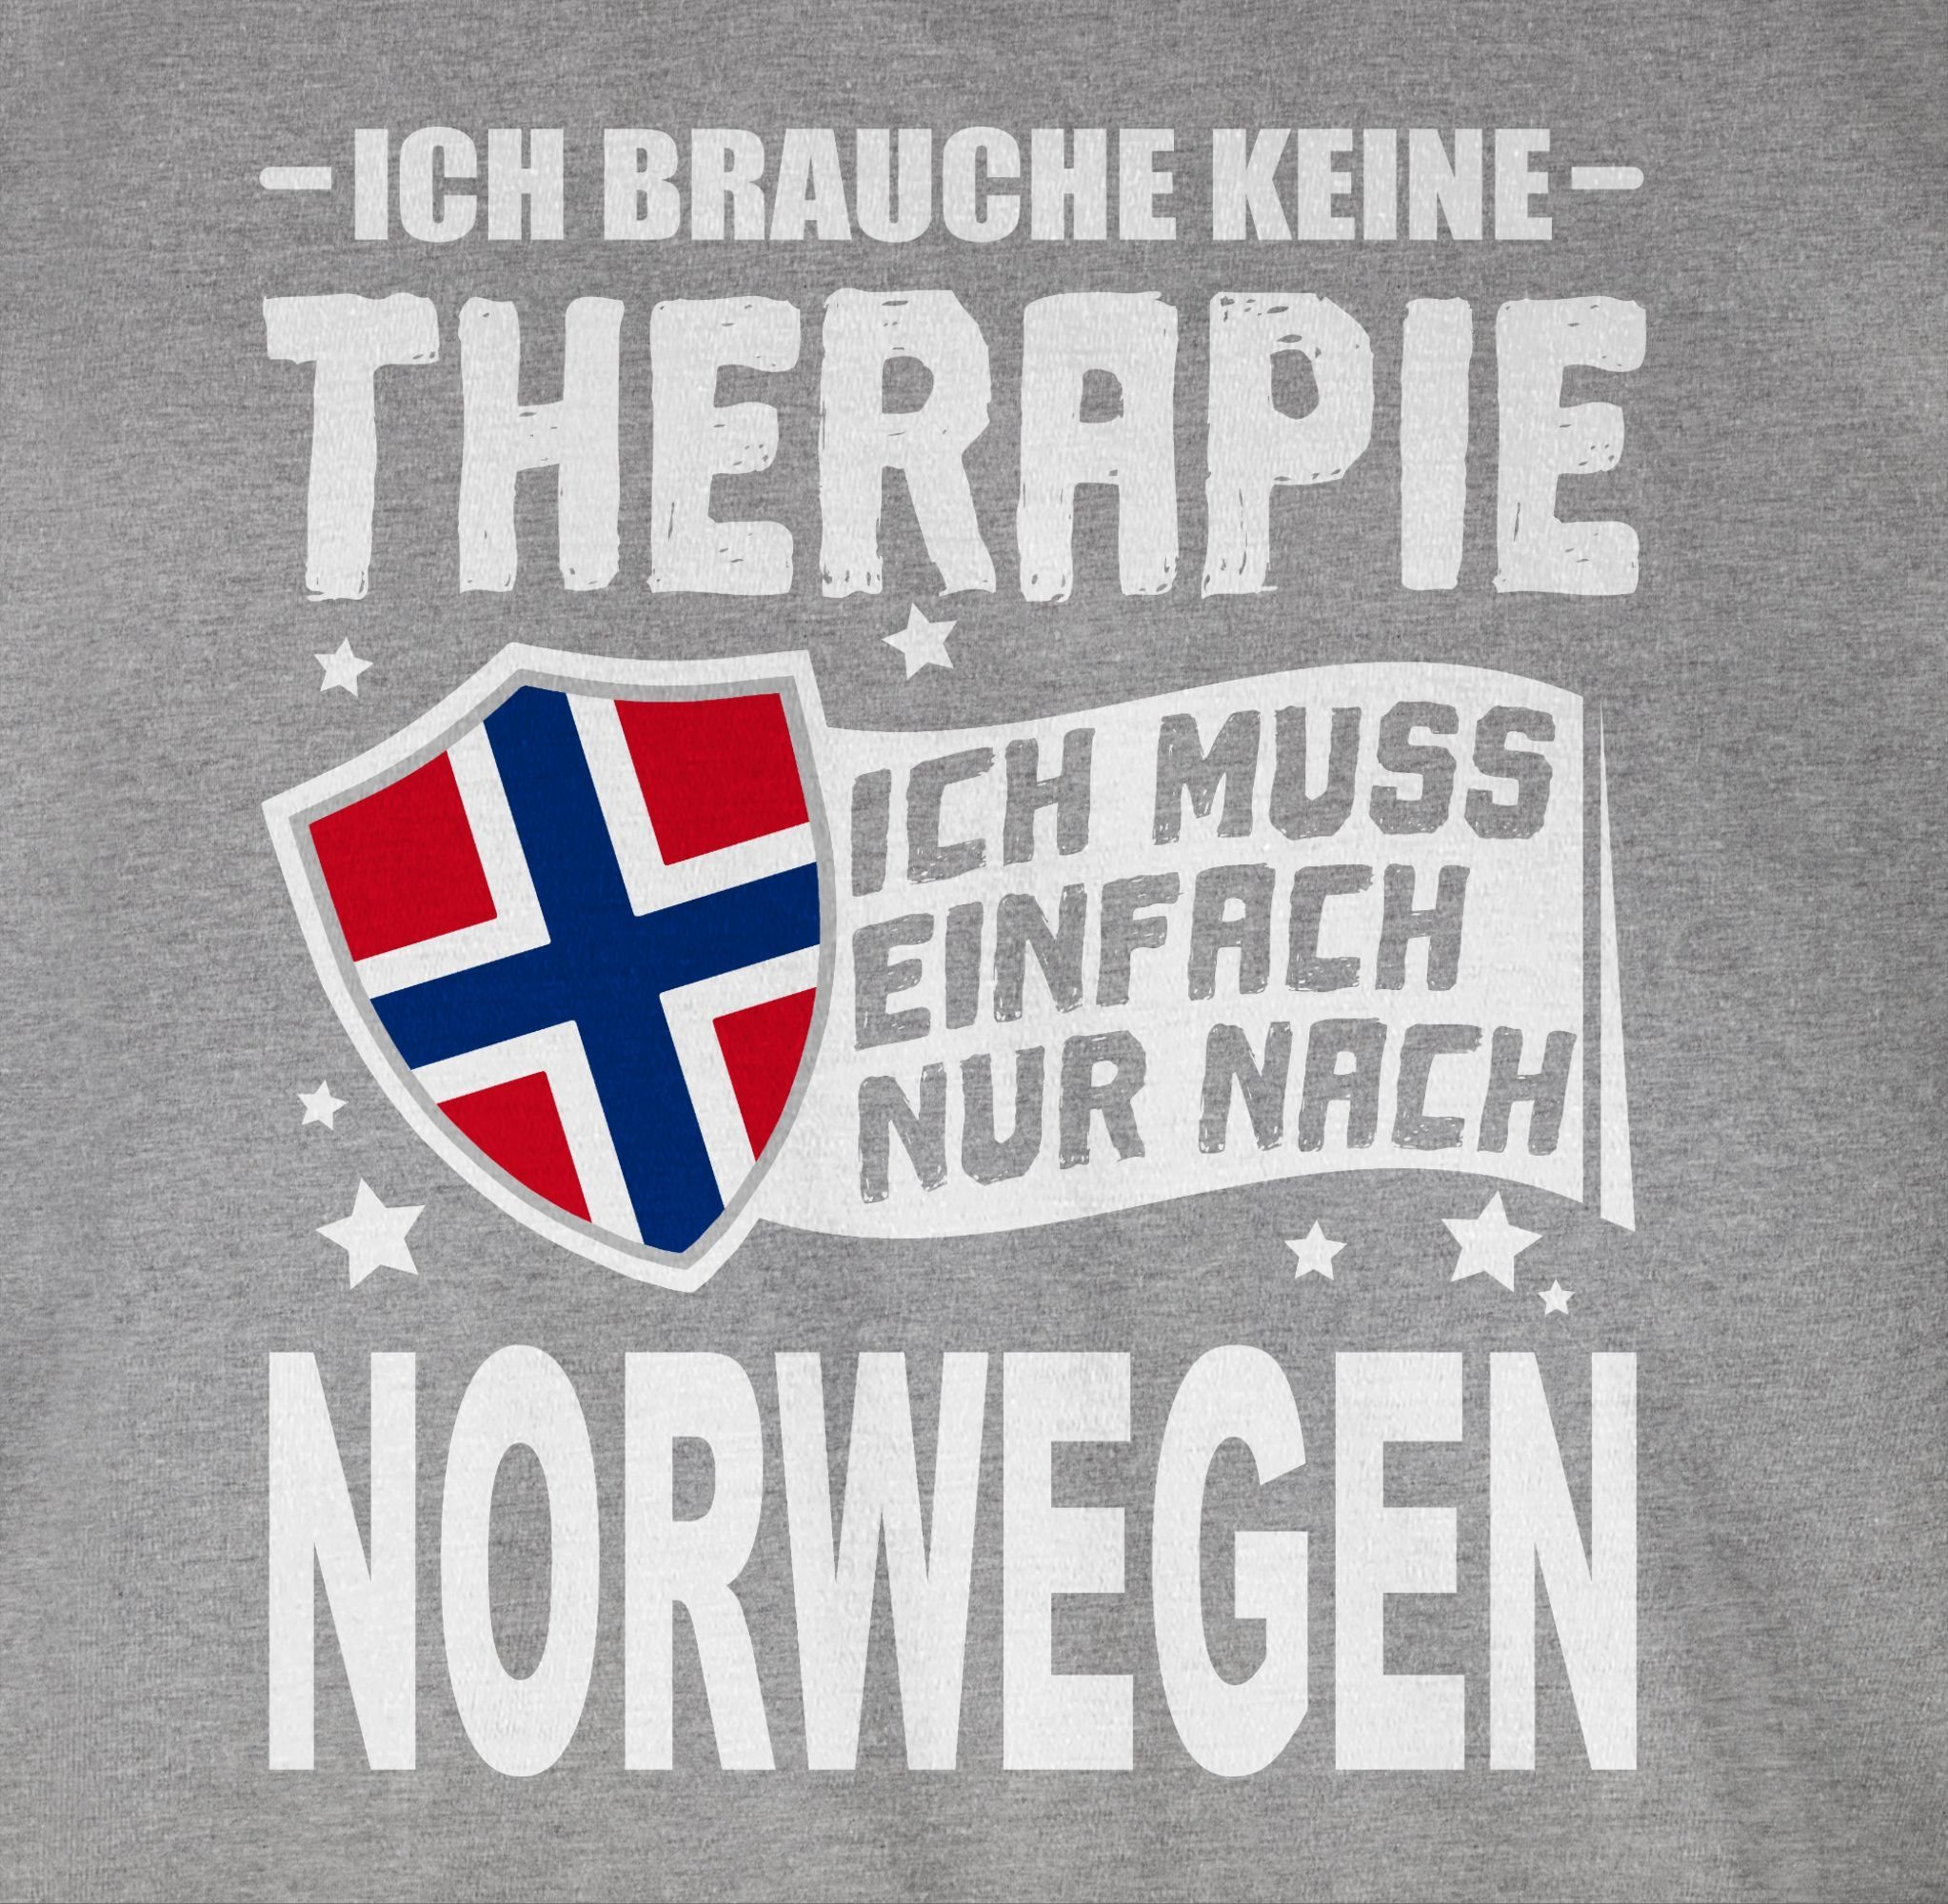 einfach Shirtracer keine Ich Grau nach Ich brauche weiß 3 Wappen nur T-Shirt Norwegen Therapie Länder meliert muss -